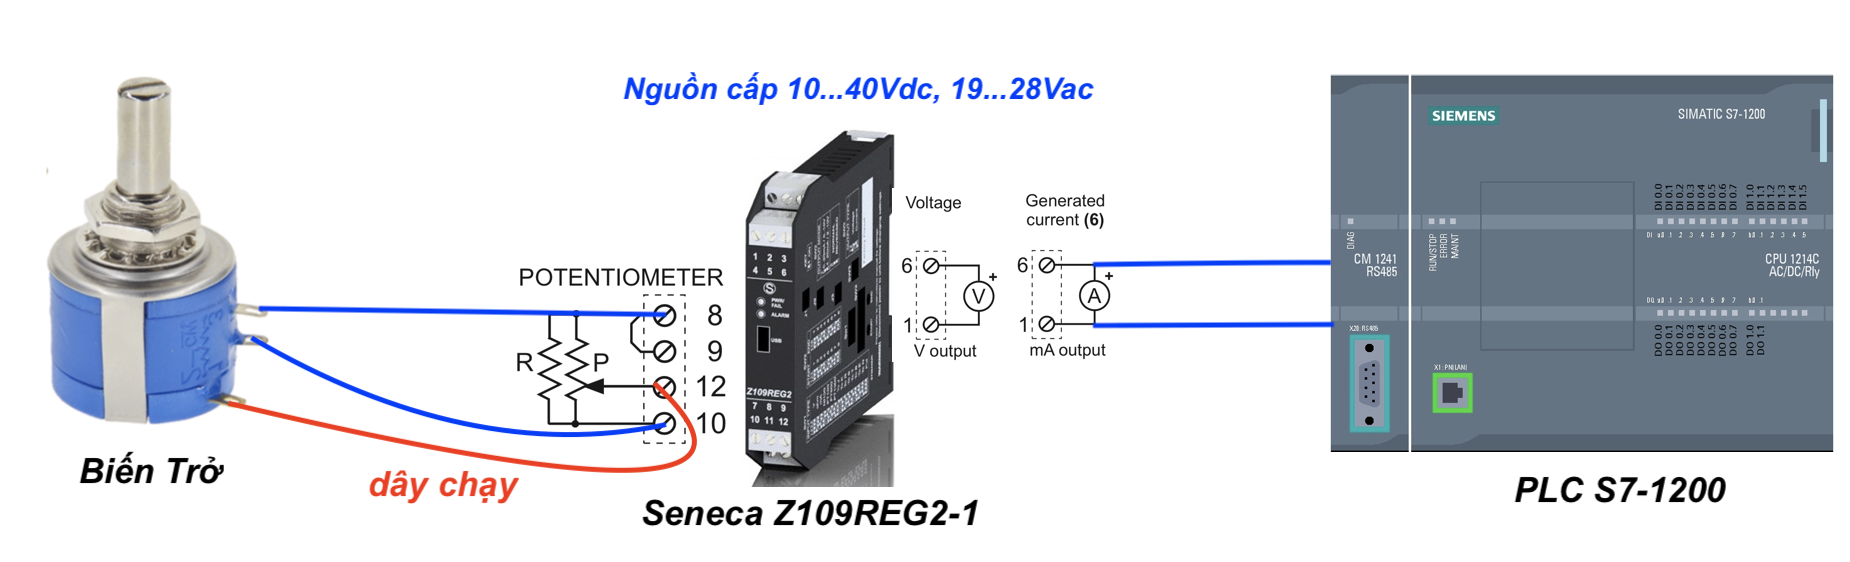 Biến trở được dùng để điều chỉnh tín hiệu 4-20mA hoặc 0-10V